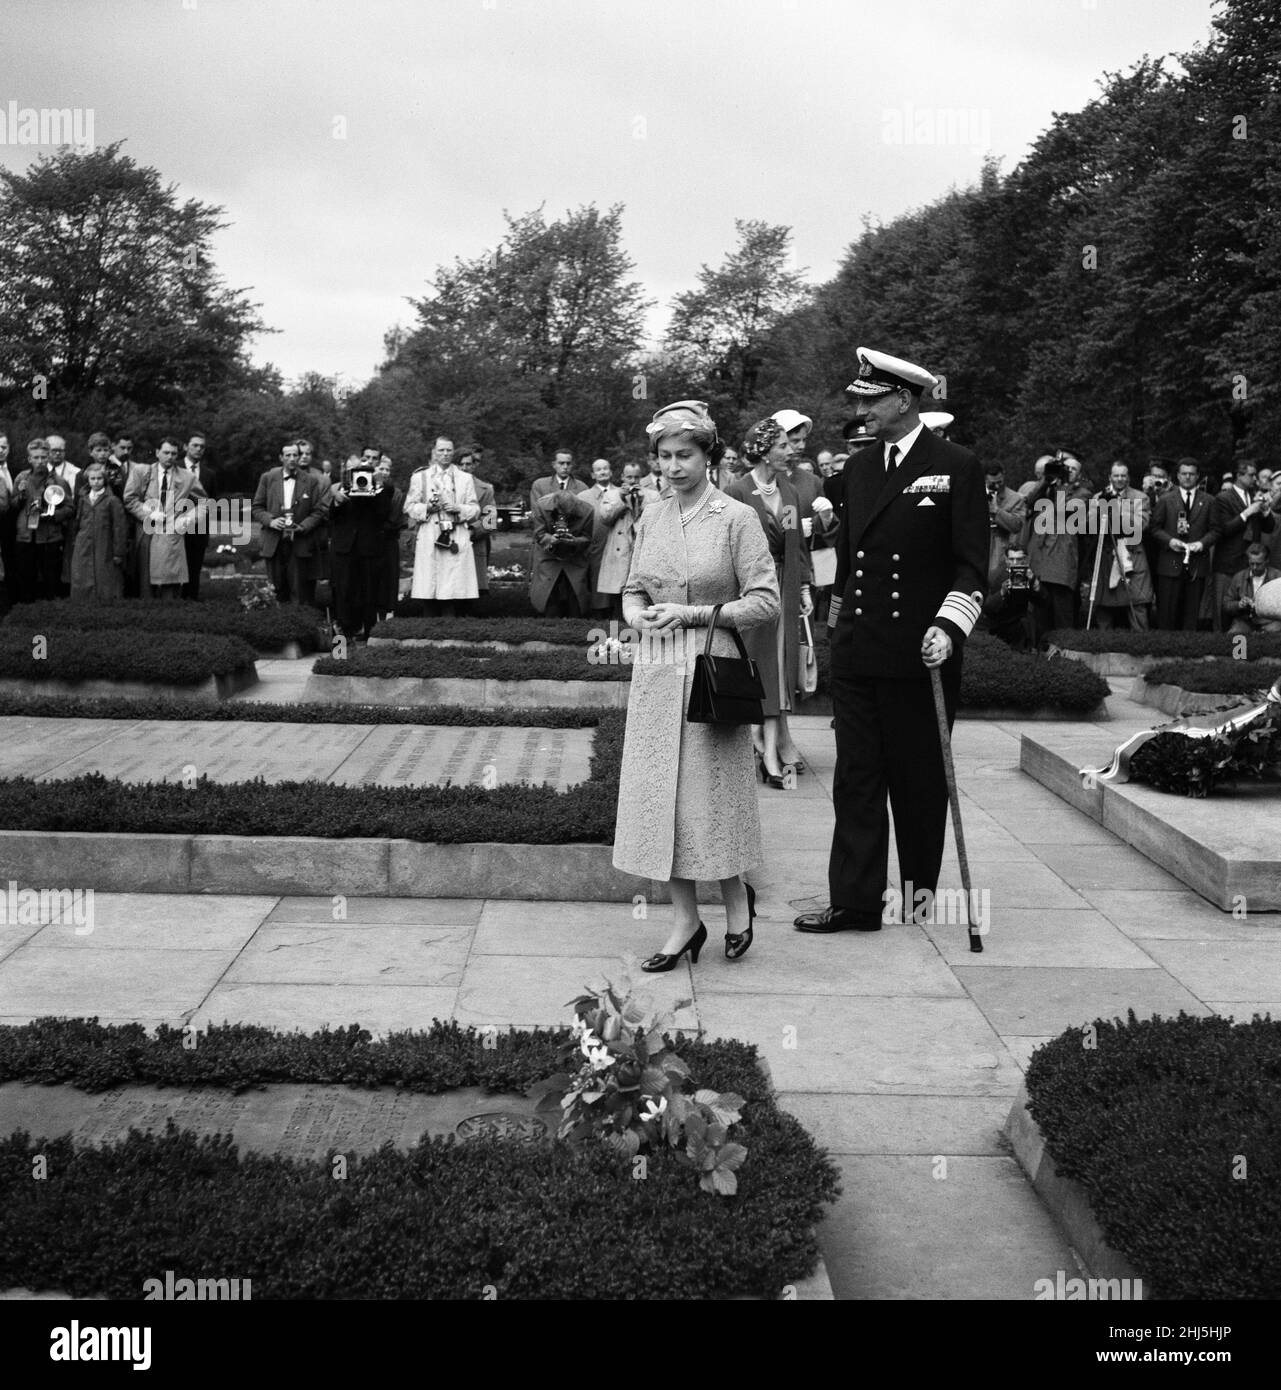 Königin Elizabeth II. Und Prinz Philip, Herzog von Edinburgh, besuchen Dänemark. Königin Elisabeth II. Und König Frederik IX. Von Dänemark, abgebildet bei einem Besuch des Gedenkfriedhofs der Widerstandsbewegung. Hinter ihnen stehen Königin Ingrid und die dänische Prinzessin Margrethe. 23rd Mai 1957. Stockfoto